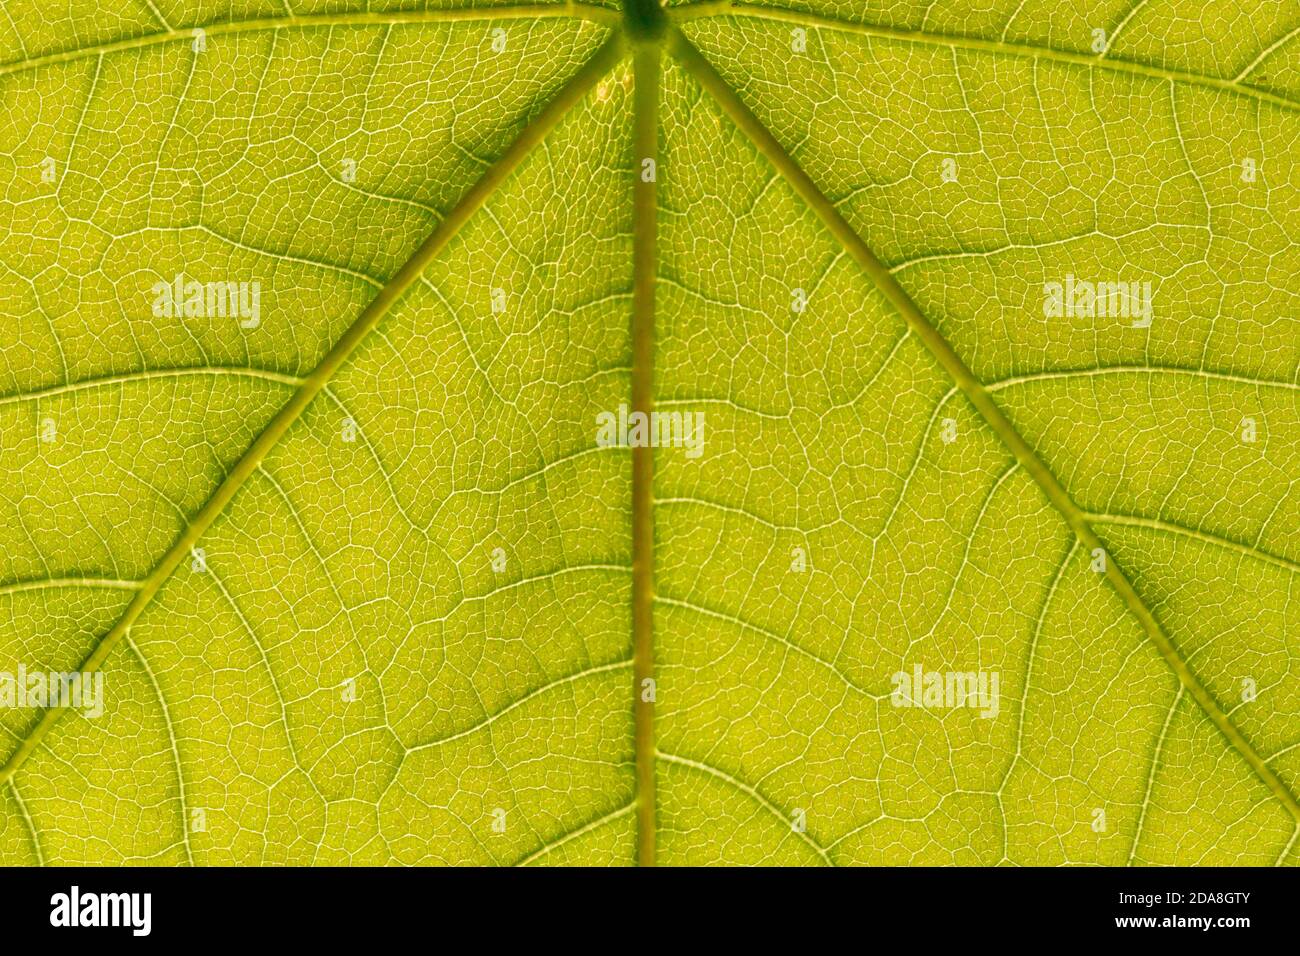 Nahaufnahme eines von Sonnenlicht beleuchteten grünen Leave, detailreiche Abbildung mit den Leave Adern und Strängen Stockfoto